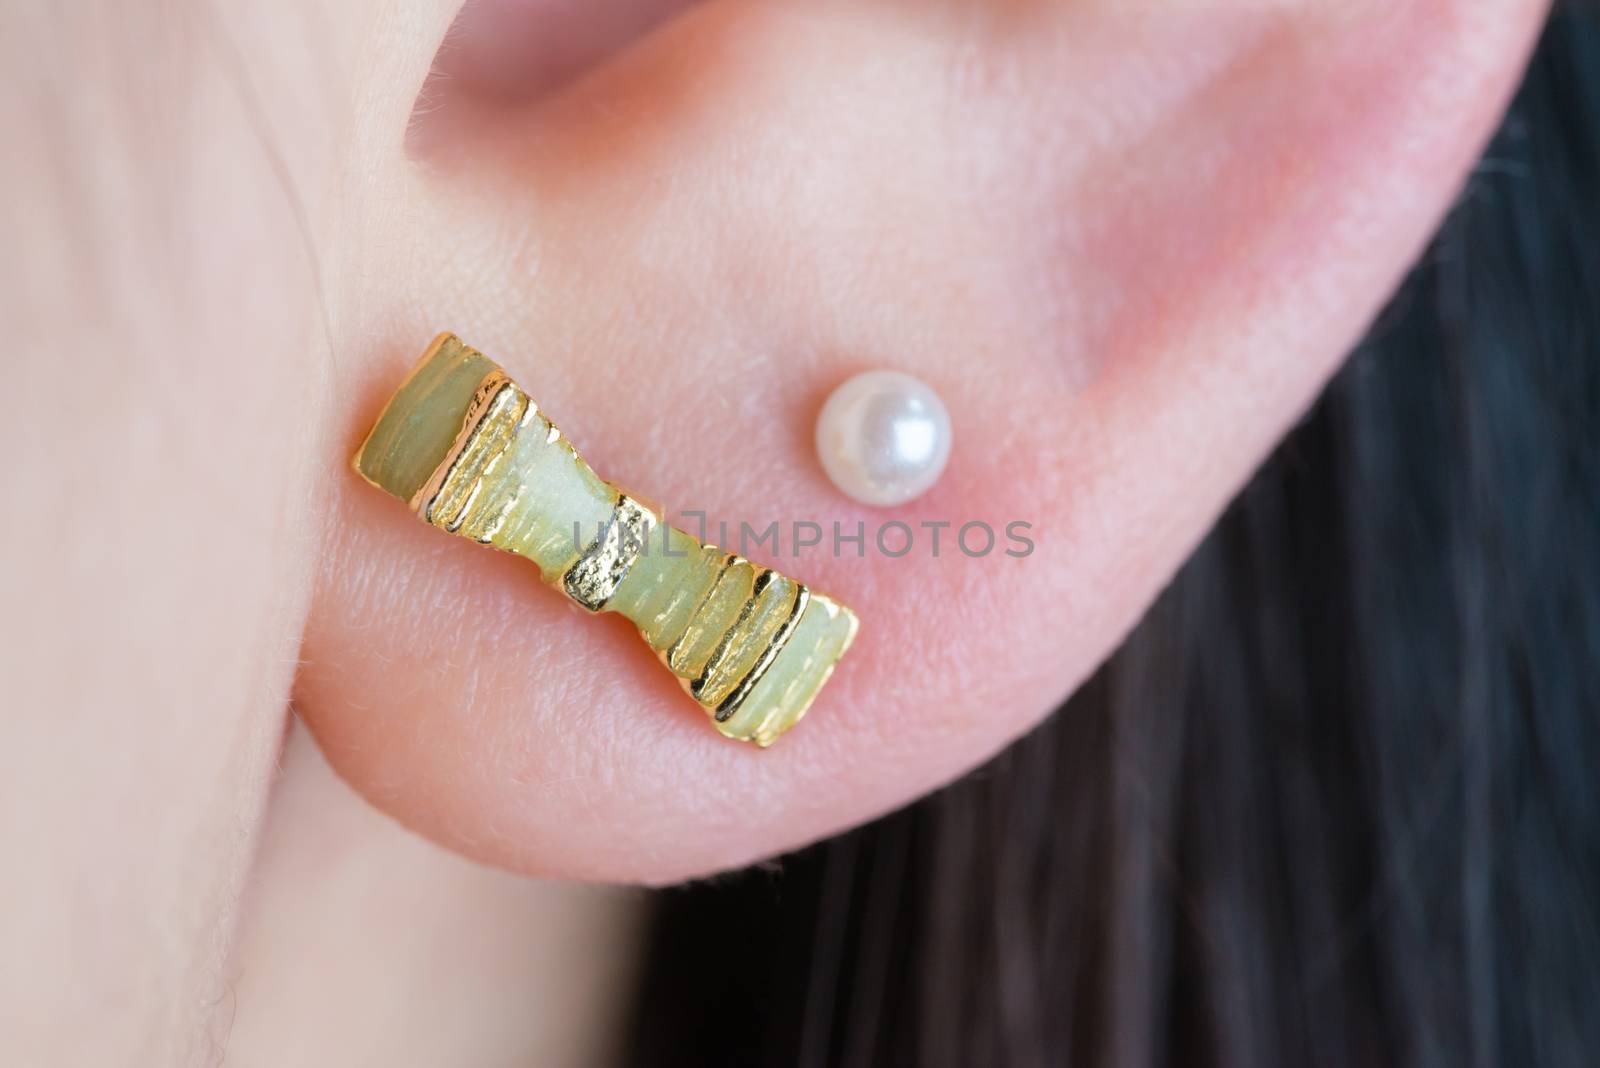 Earrings in Ear by justtscott